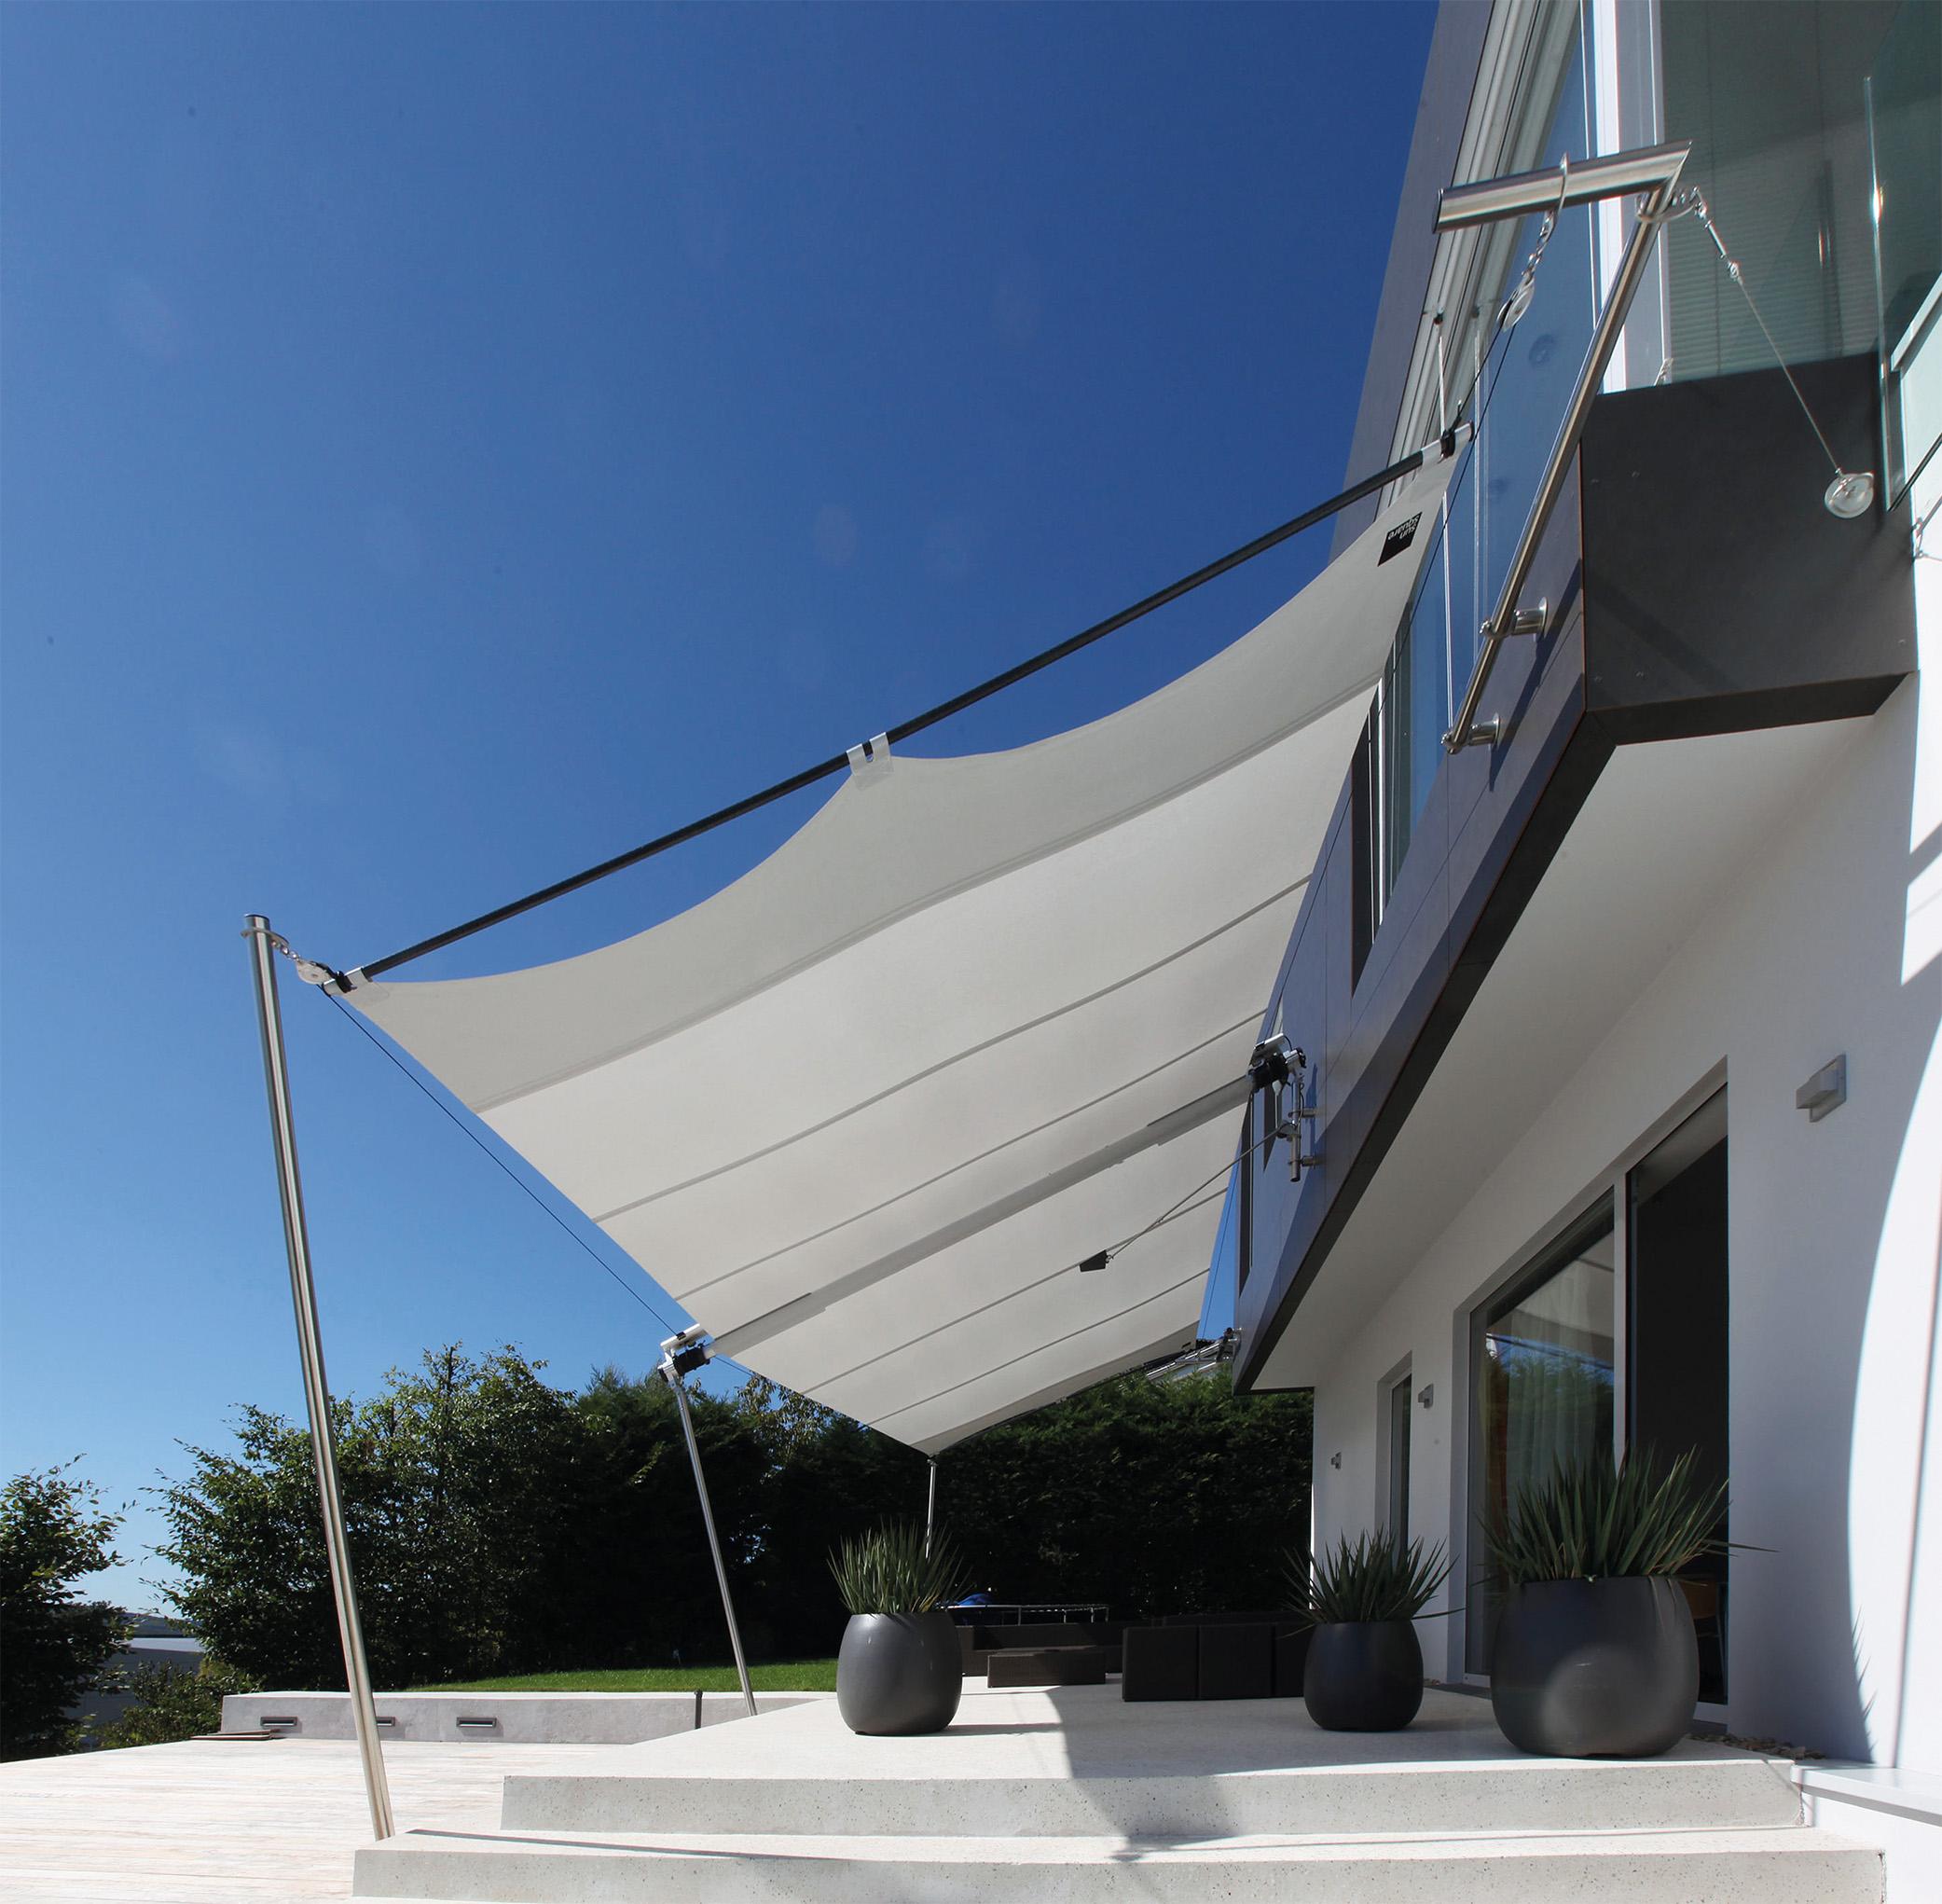 Modernes Sonnensegel #terrasse #minimalistisch #sonnensegel #terrassengestaltung #steinterrasse #blumenkübel #sonnenschutzterrasse #sonnensegelterrasse ©Sunsquare